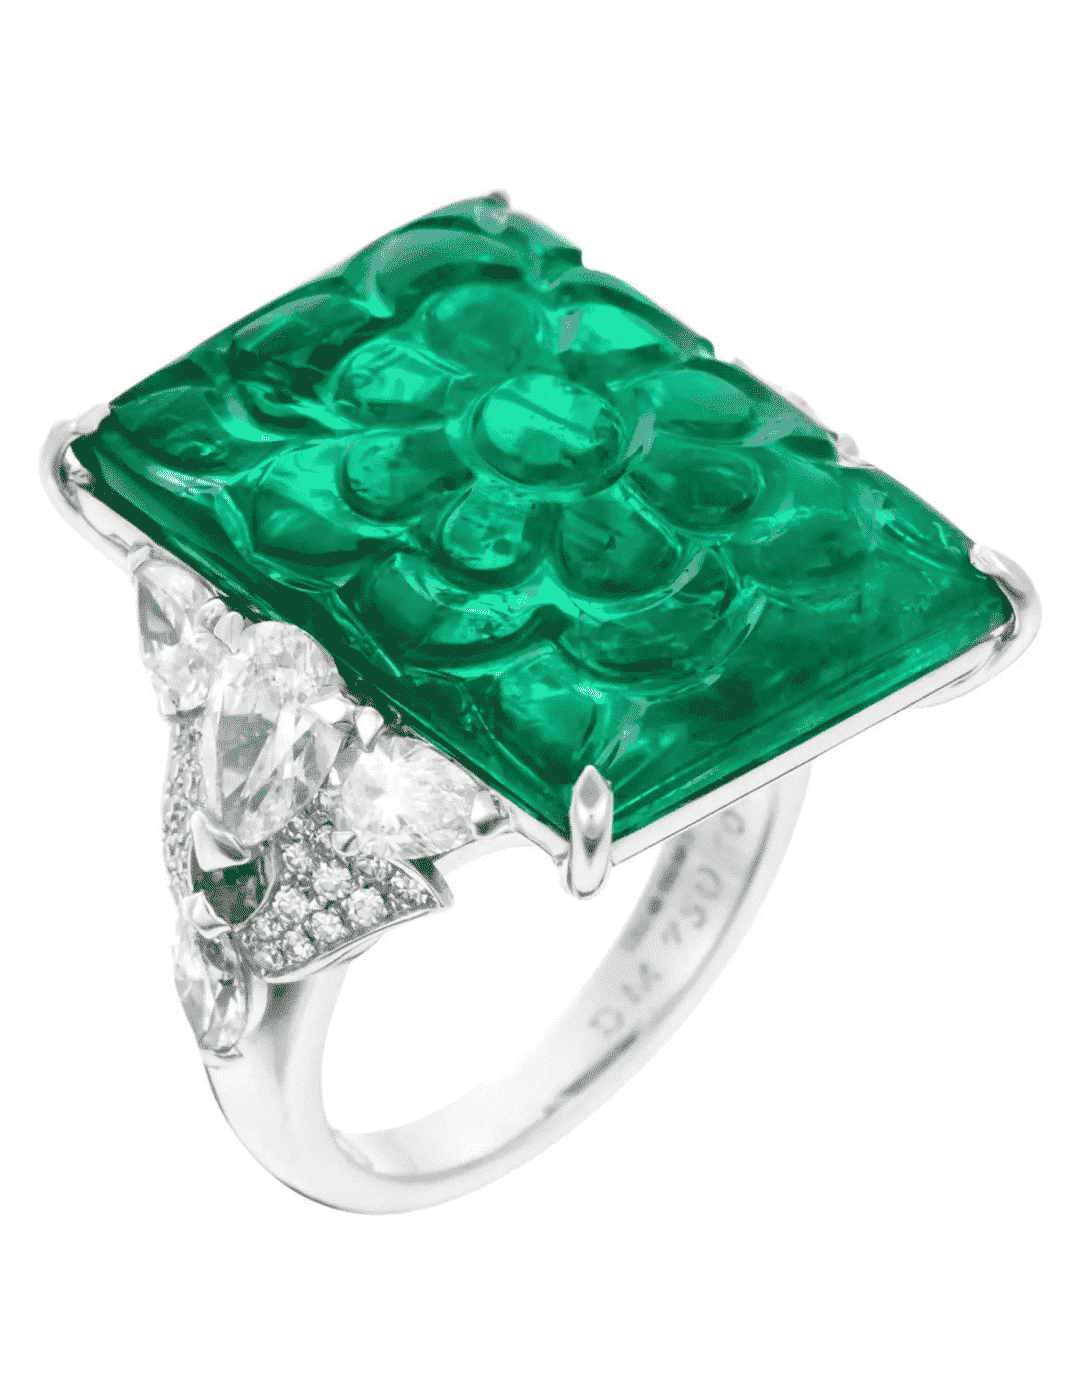 Коктейльное кольцо с бриллиантом и изумрудом весом 15,30 карата, сертификат GRS